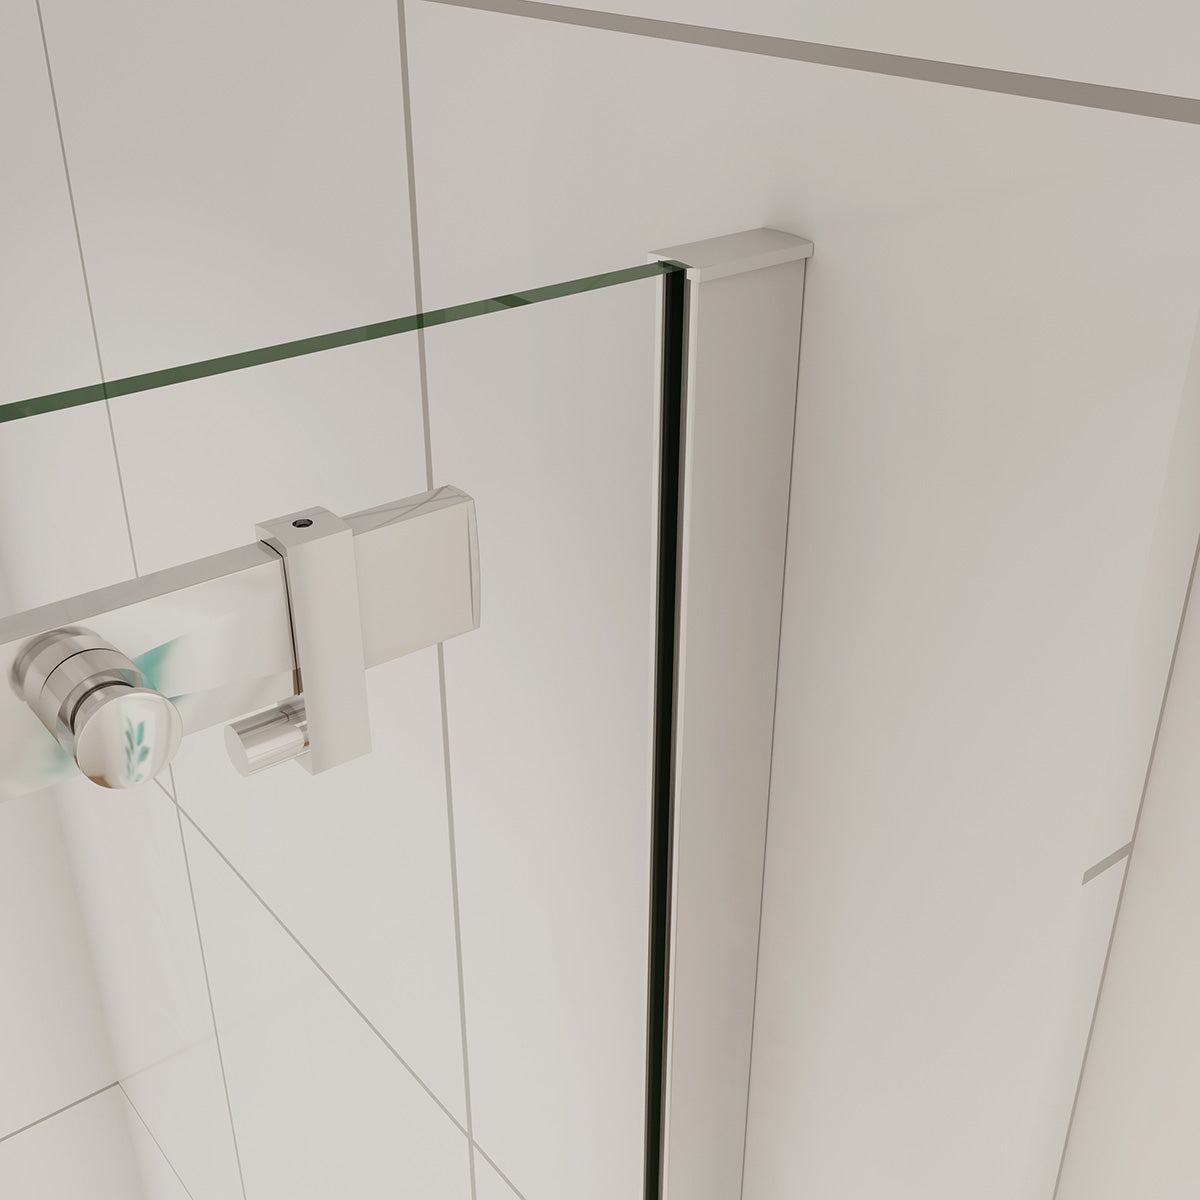 Duschtür+Seitenwand Dusche Duschabtrennung Duschkabine 130x70 cm Glasstärke 6mm Schiebetür